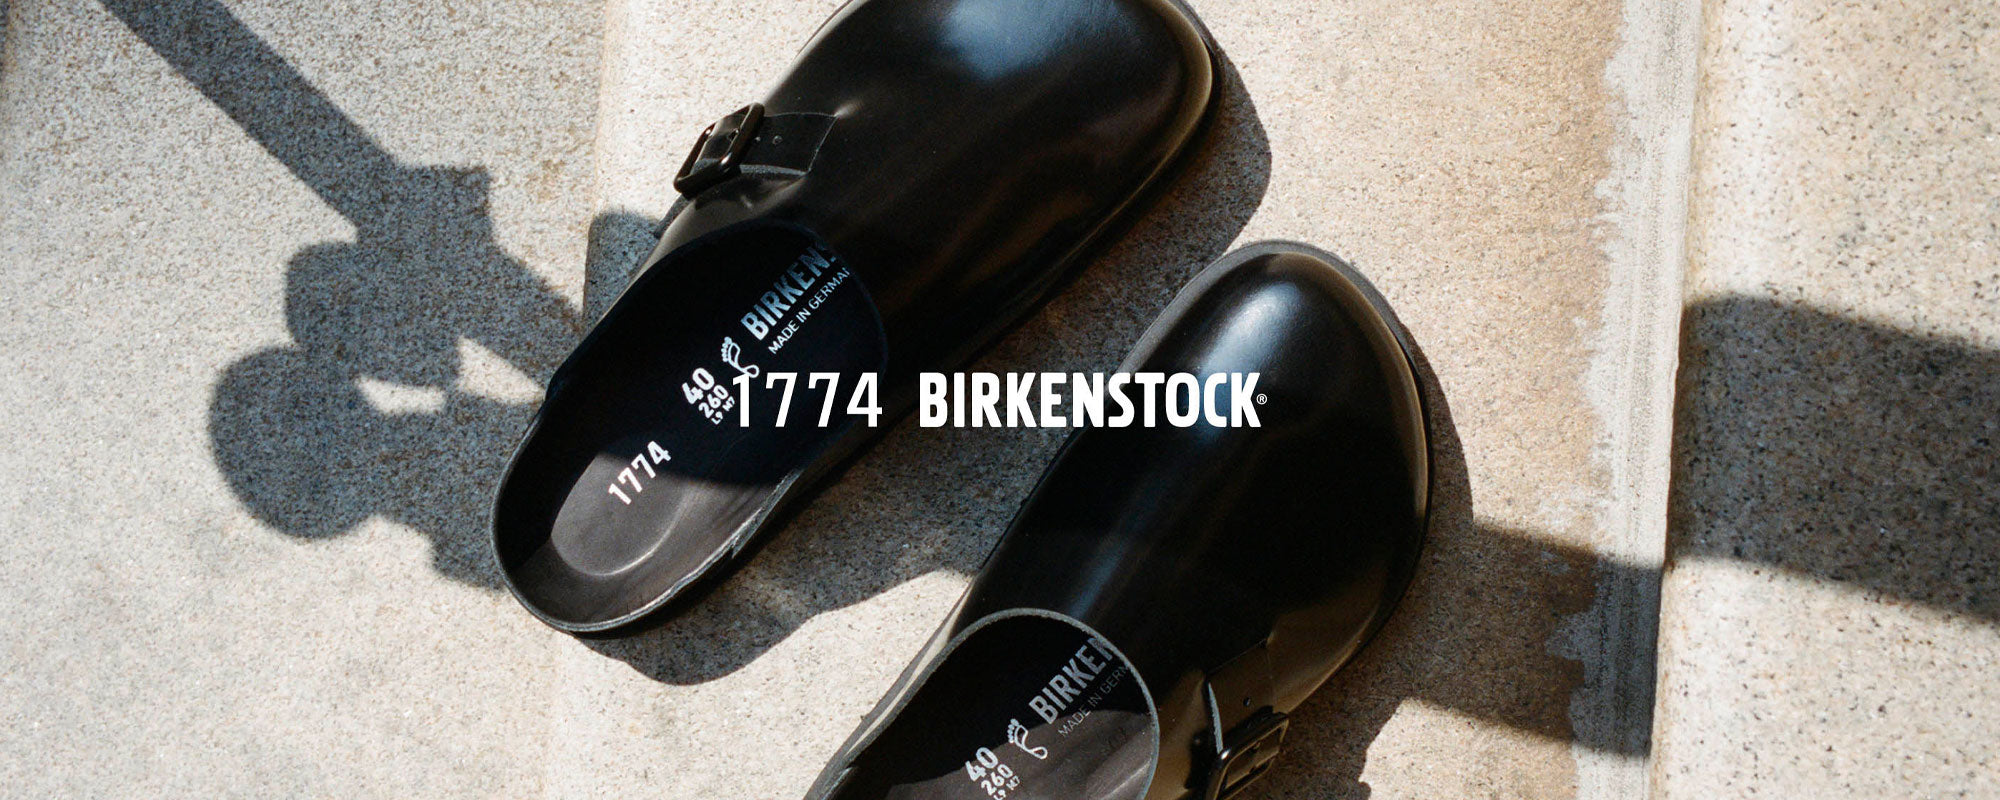 Birkenstock 1774 Women